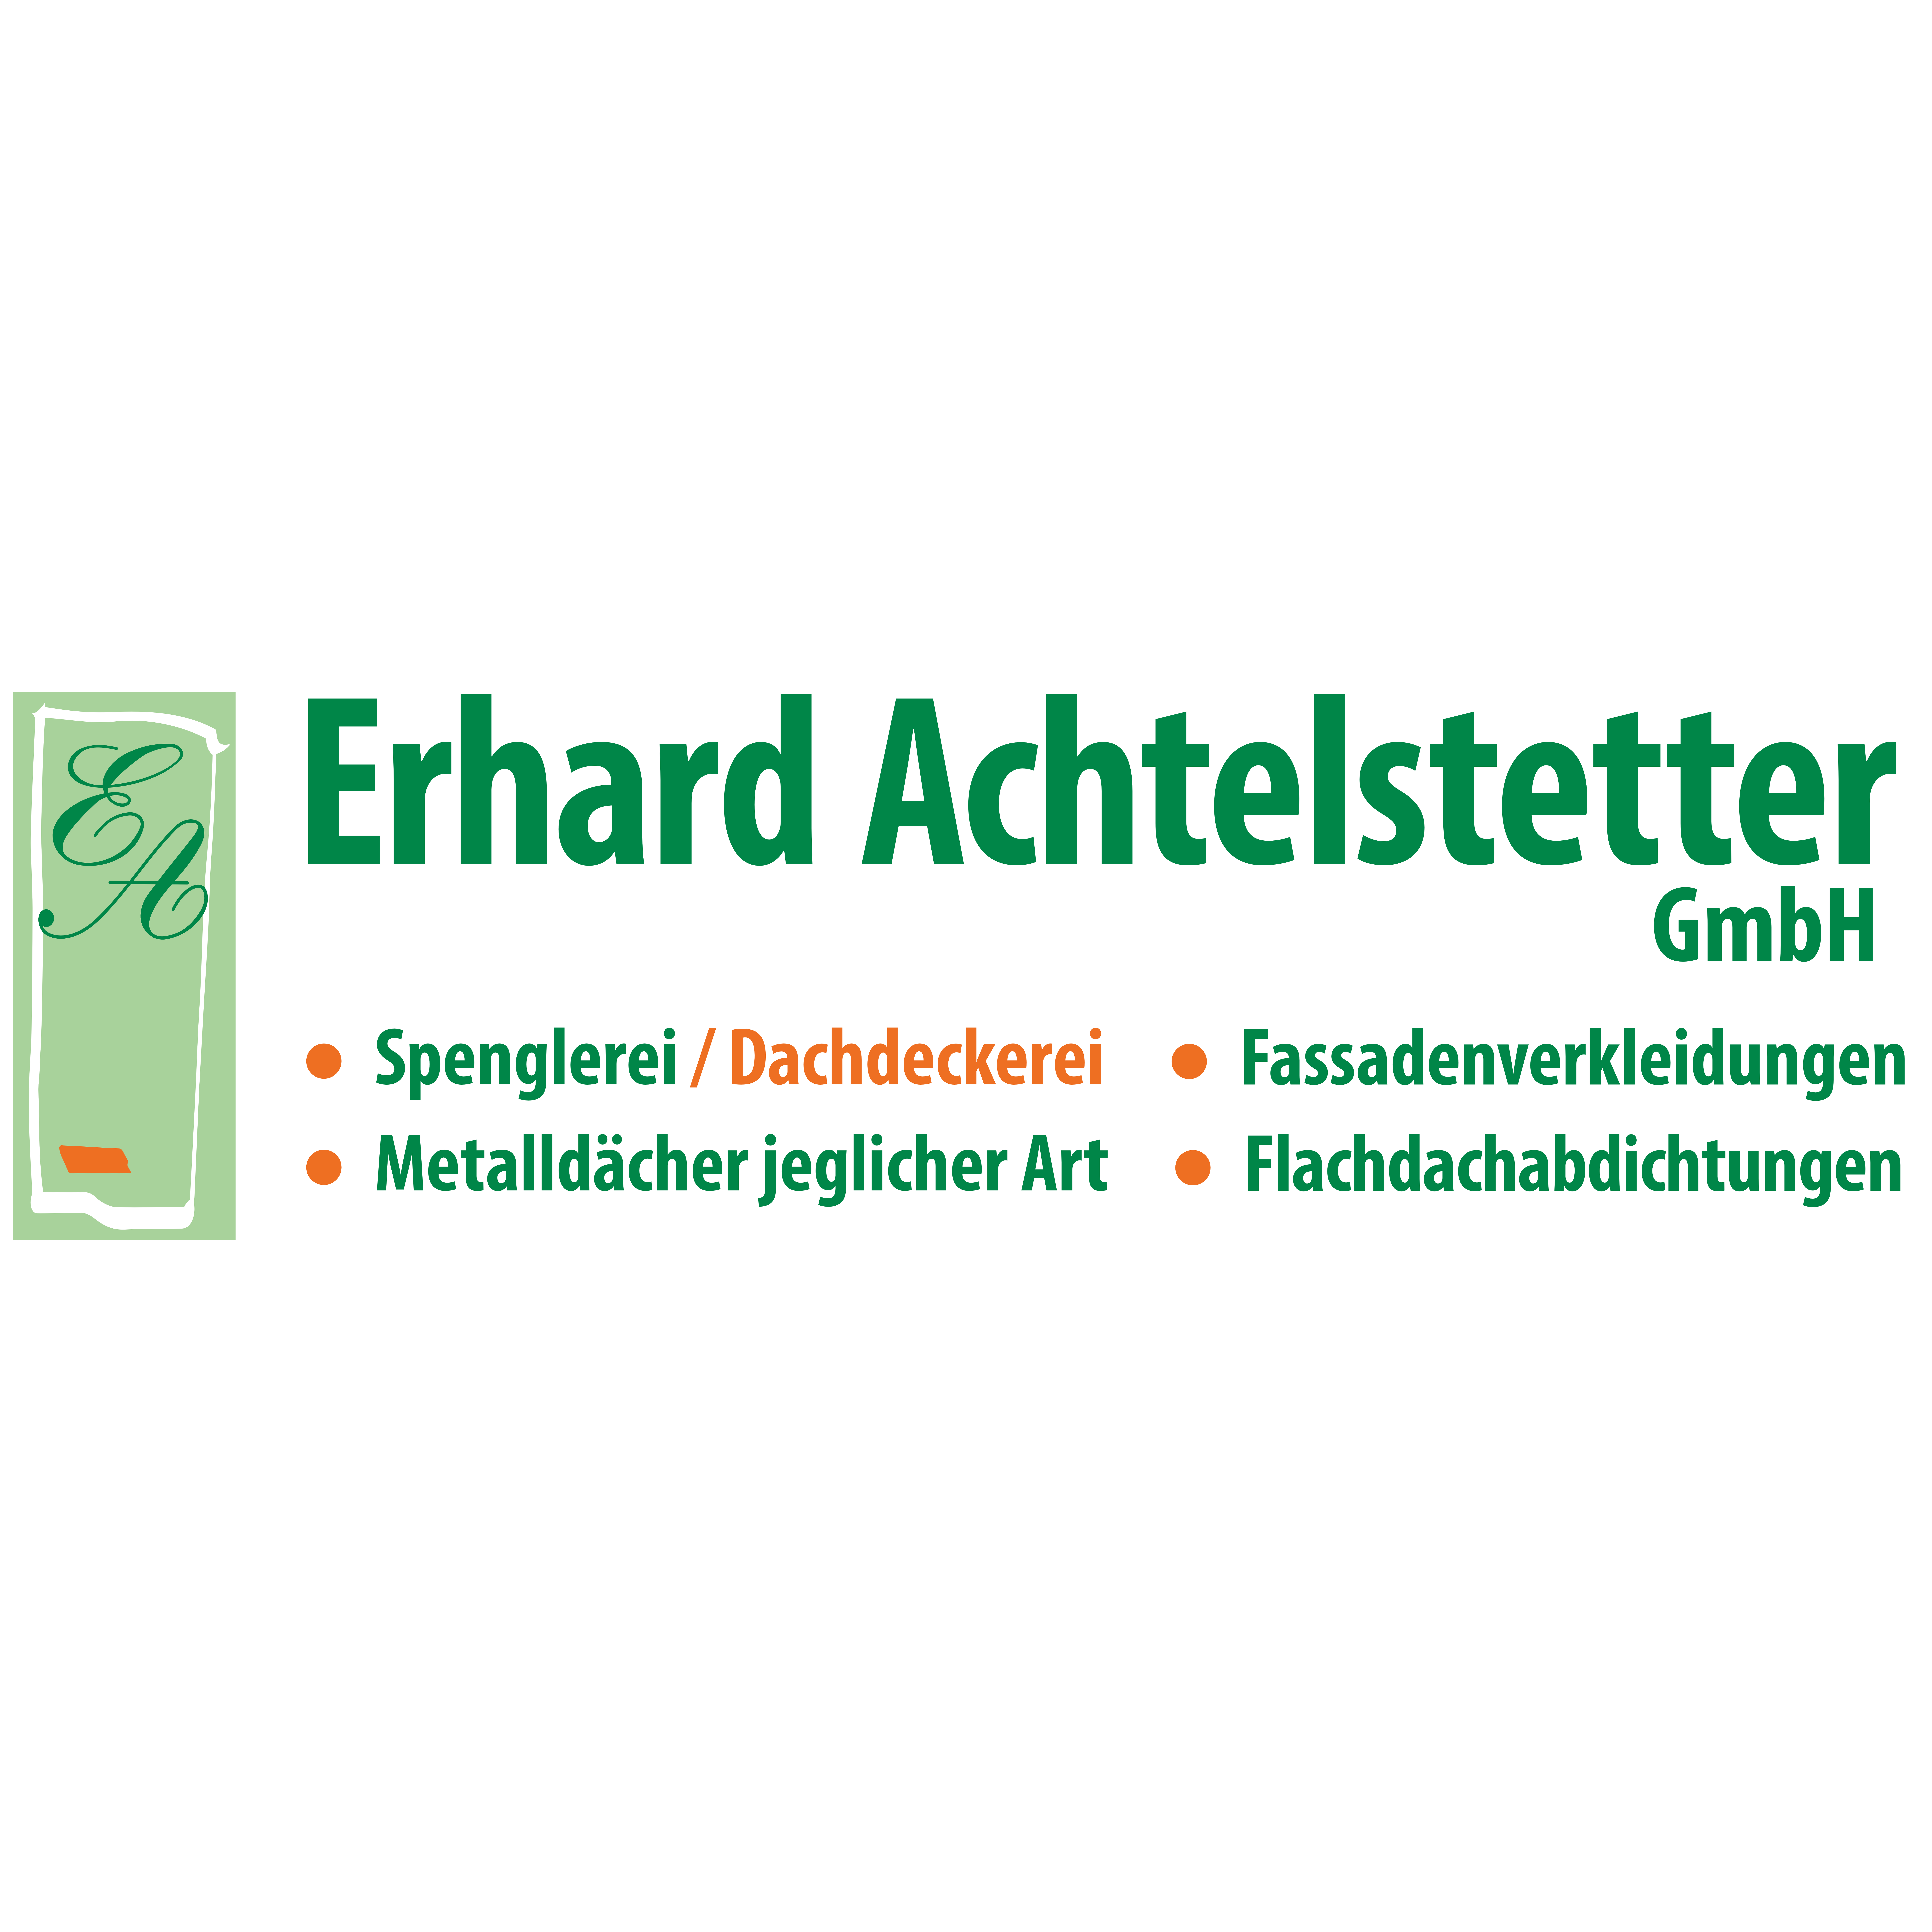 Erhard Achtelstetter GmbH Logo